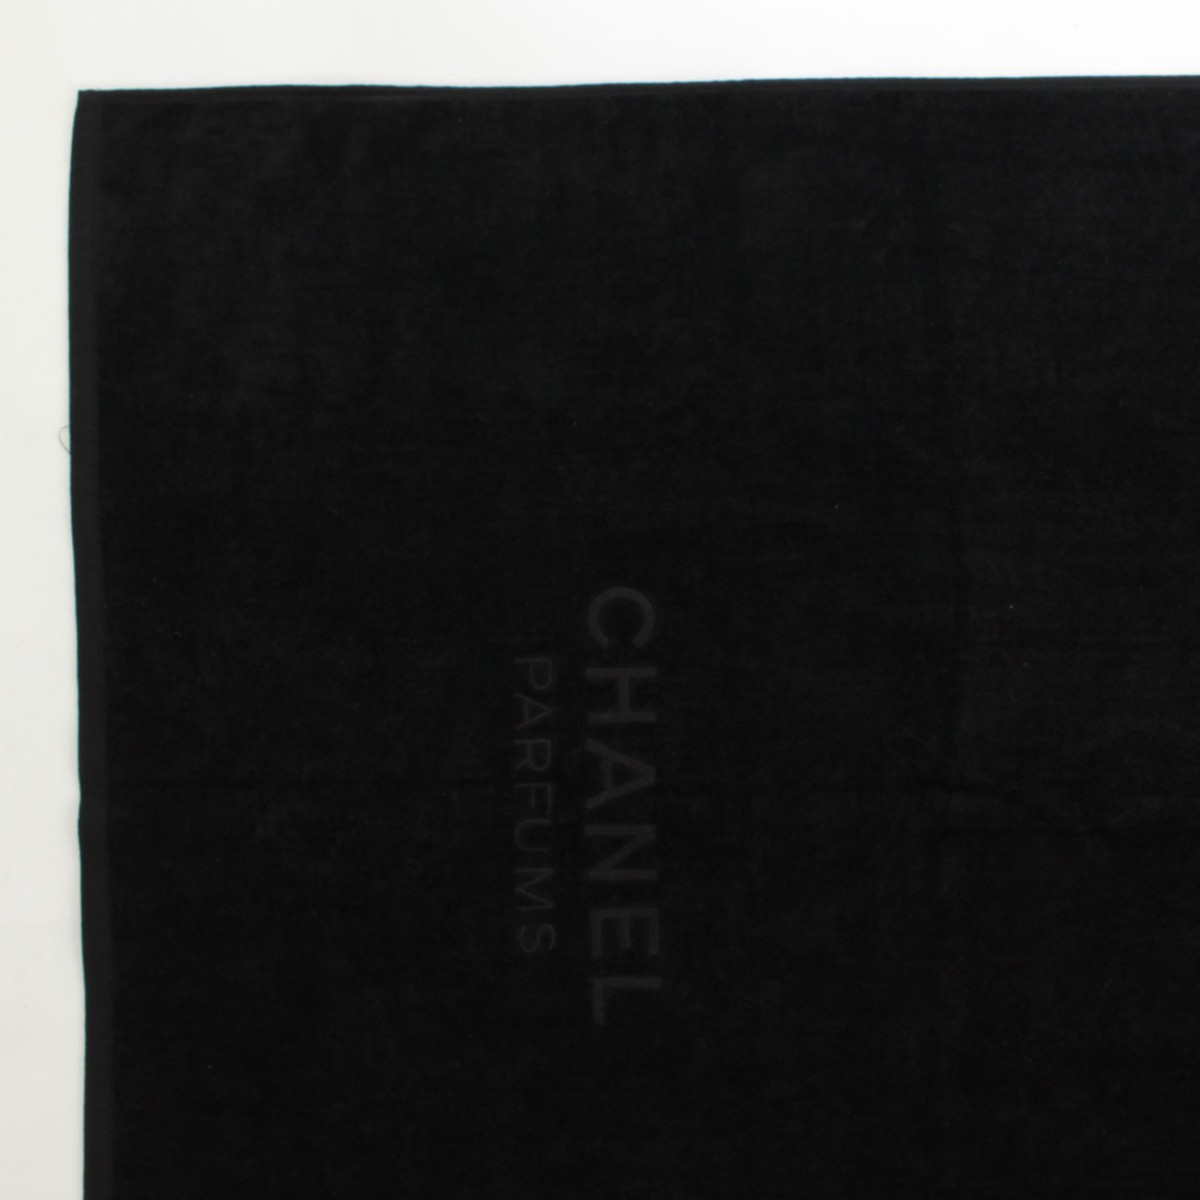 [ Chanel ]Chanel пляж полотенце банное полотенце 2002 черный духи бутылка [ б/у ][ стандартный товар гарантия ]37334